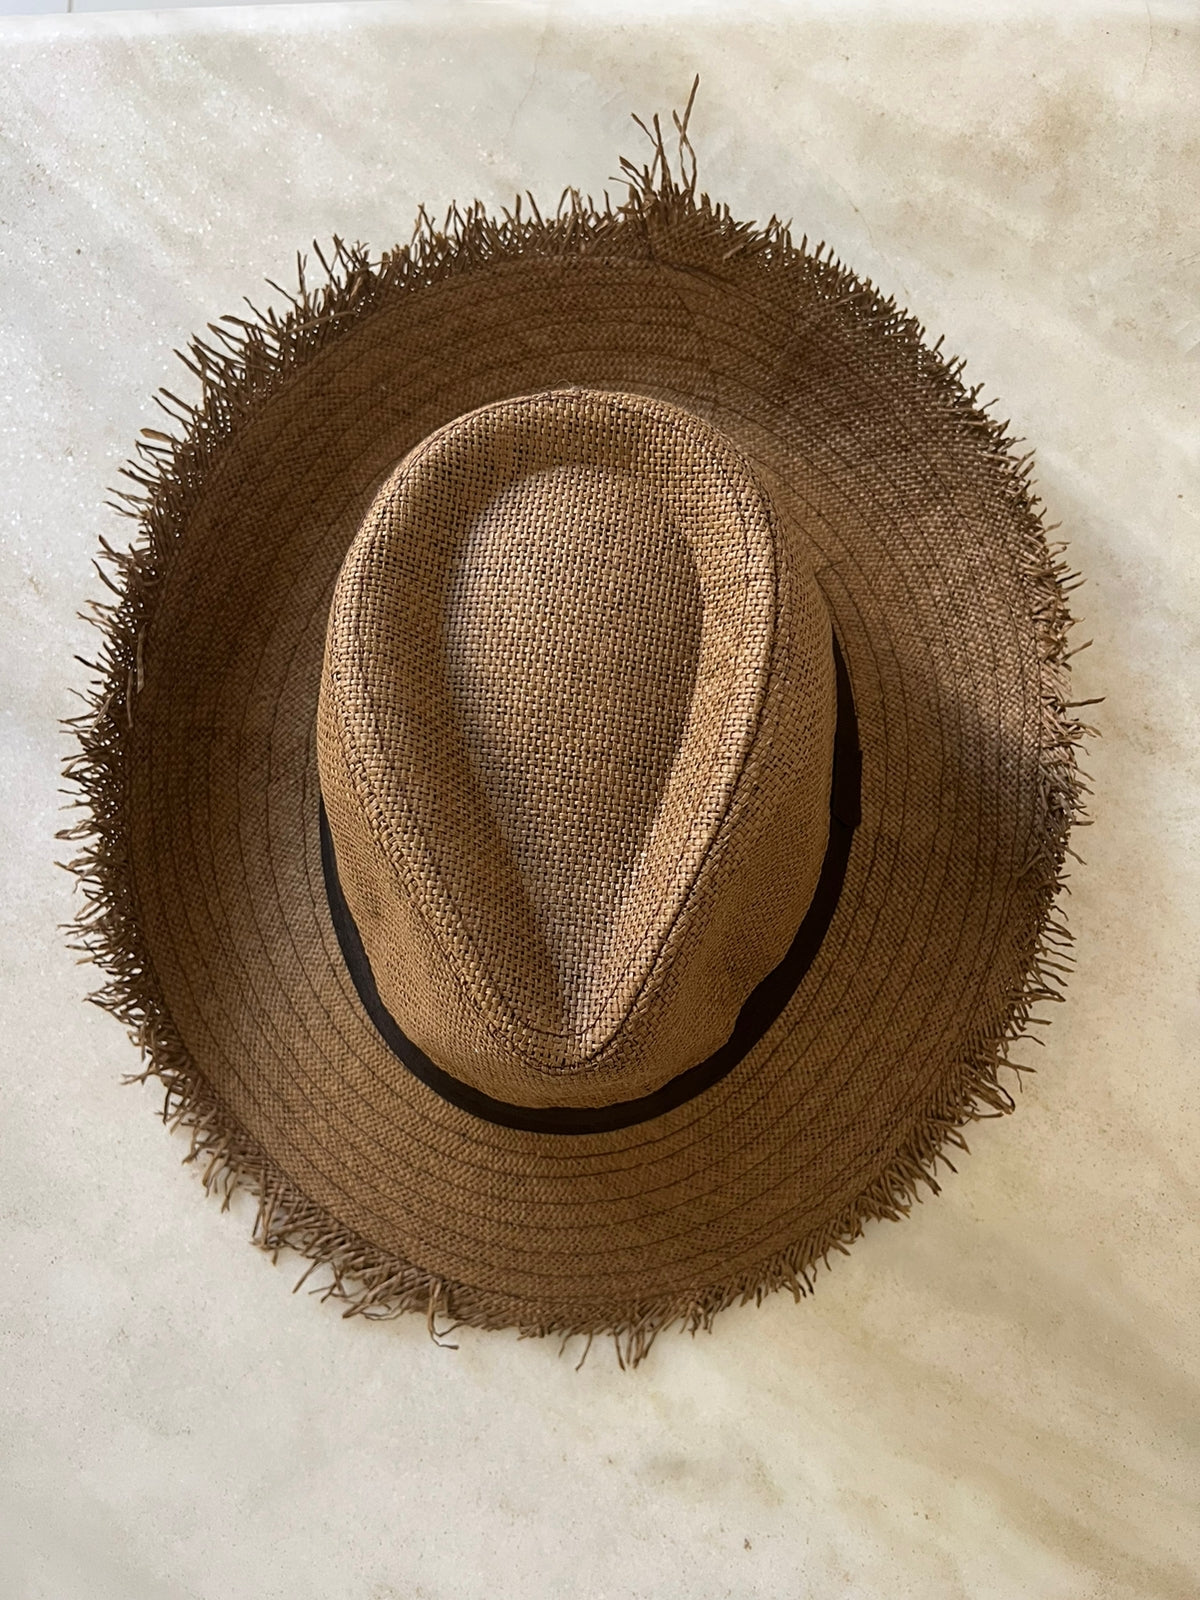 Essencials - Sombrero de Paja Habano